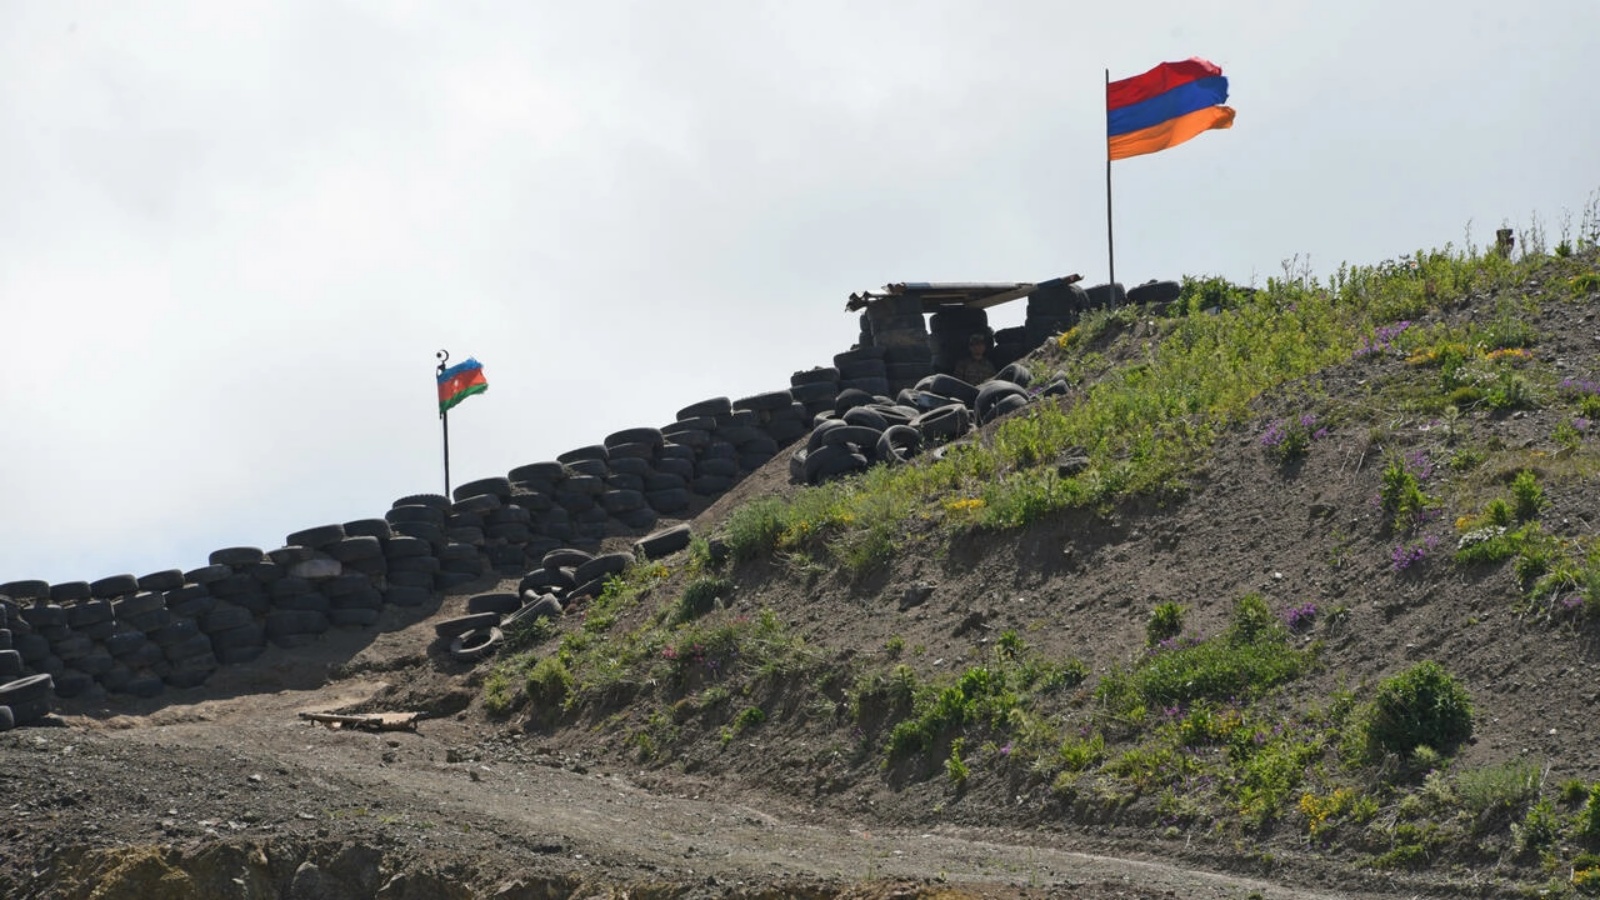 تُظهر هذه الصورة التي التقطت بالقرب من قرية سوتك، أرمينيا، في 18 يونيو 2021 ، علم أذربيجان (على اليسار) وعلم أرمينيا يرفرف عند نقطة تفتيش حدودية بين البلدين